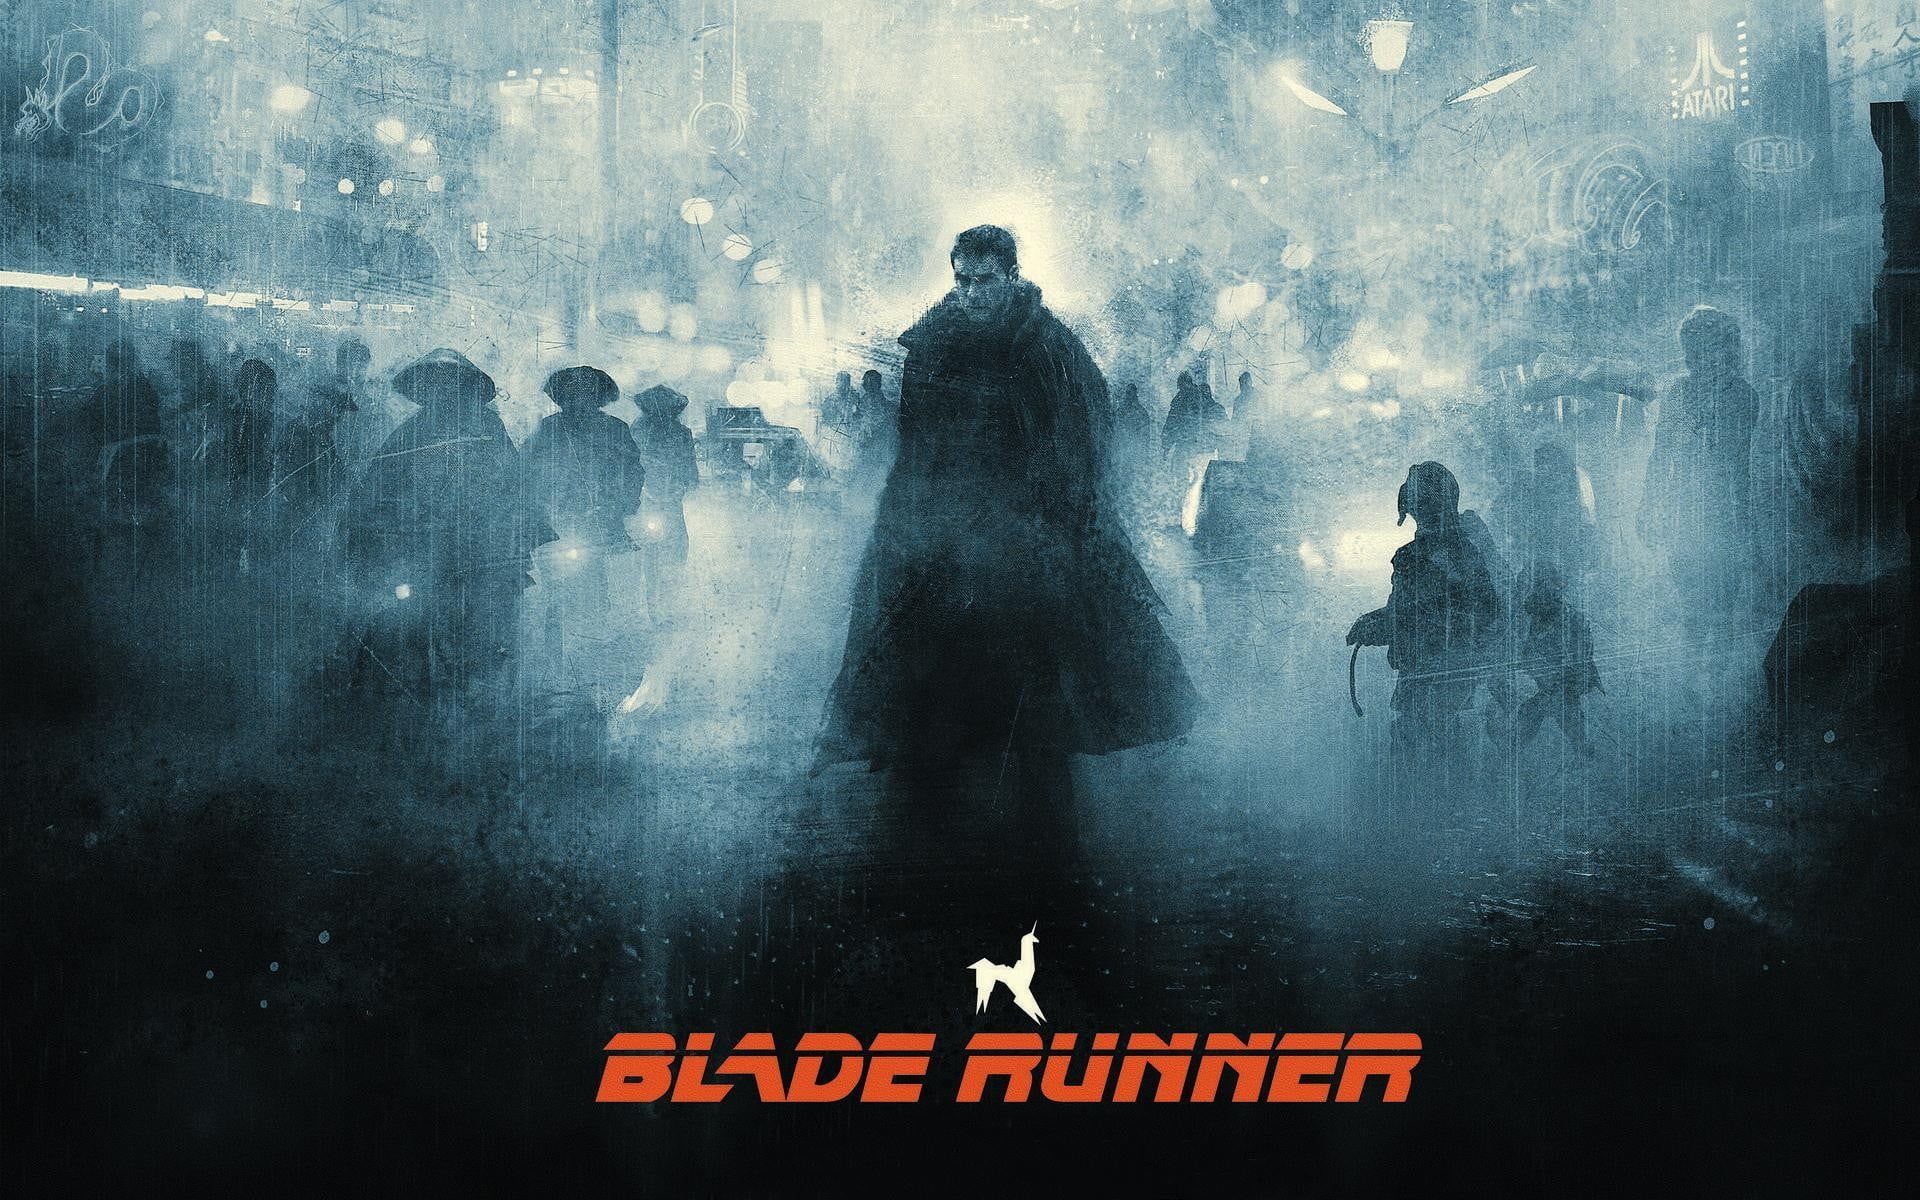 Blade Runner digital wallpaper Blade Runner digital art science fiction # movies Harrison Ford #artwork Rick De. Blade runner wallpaper, Blade runner, HD wallpaper